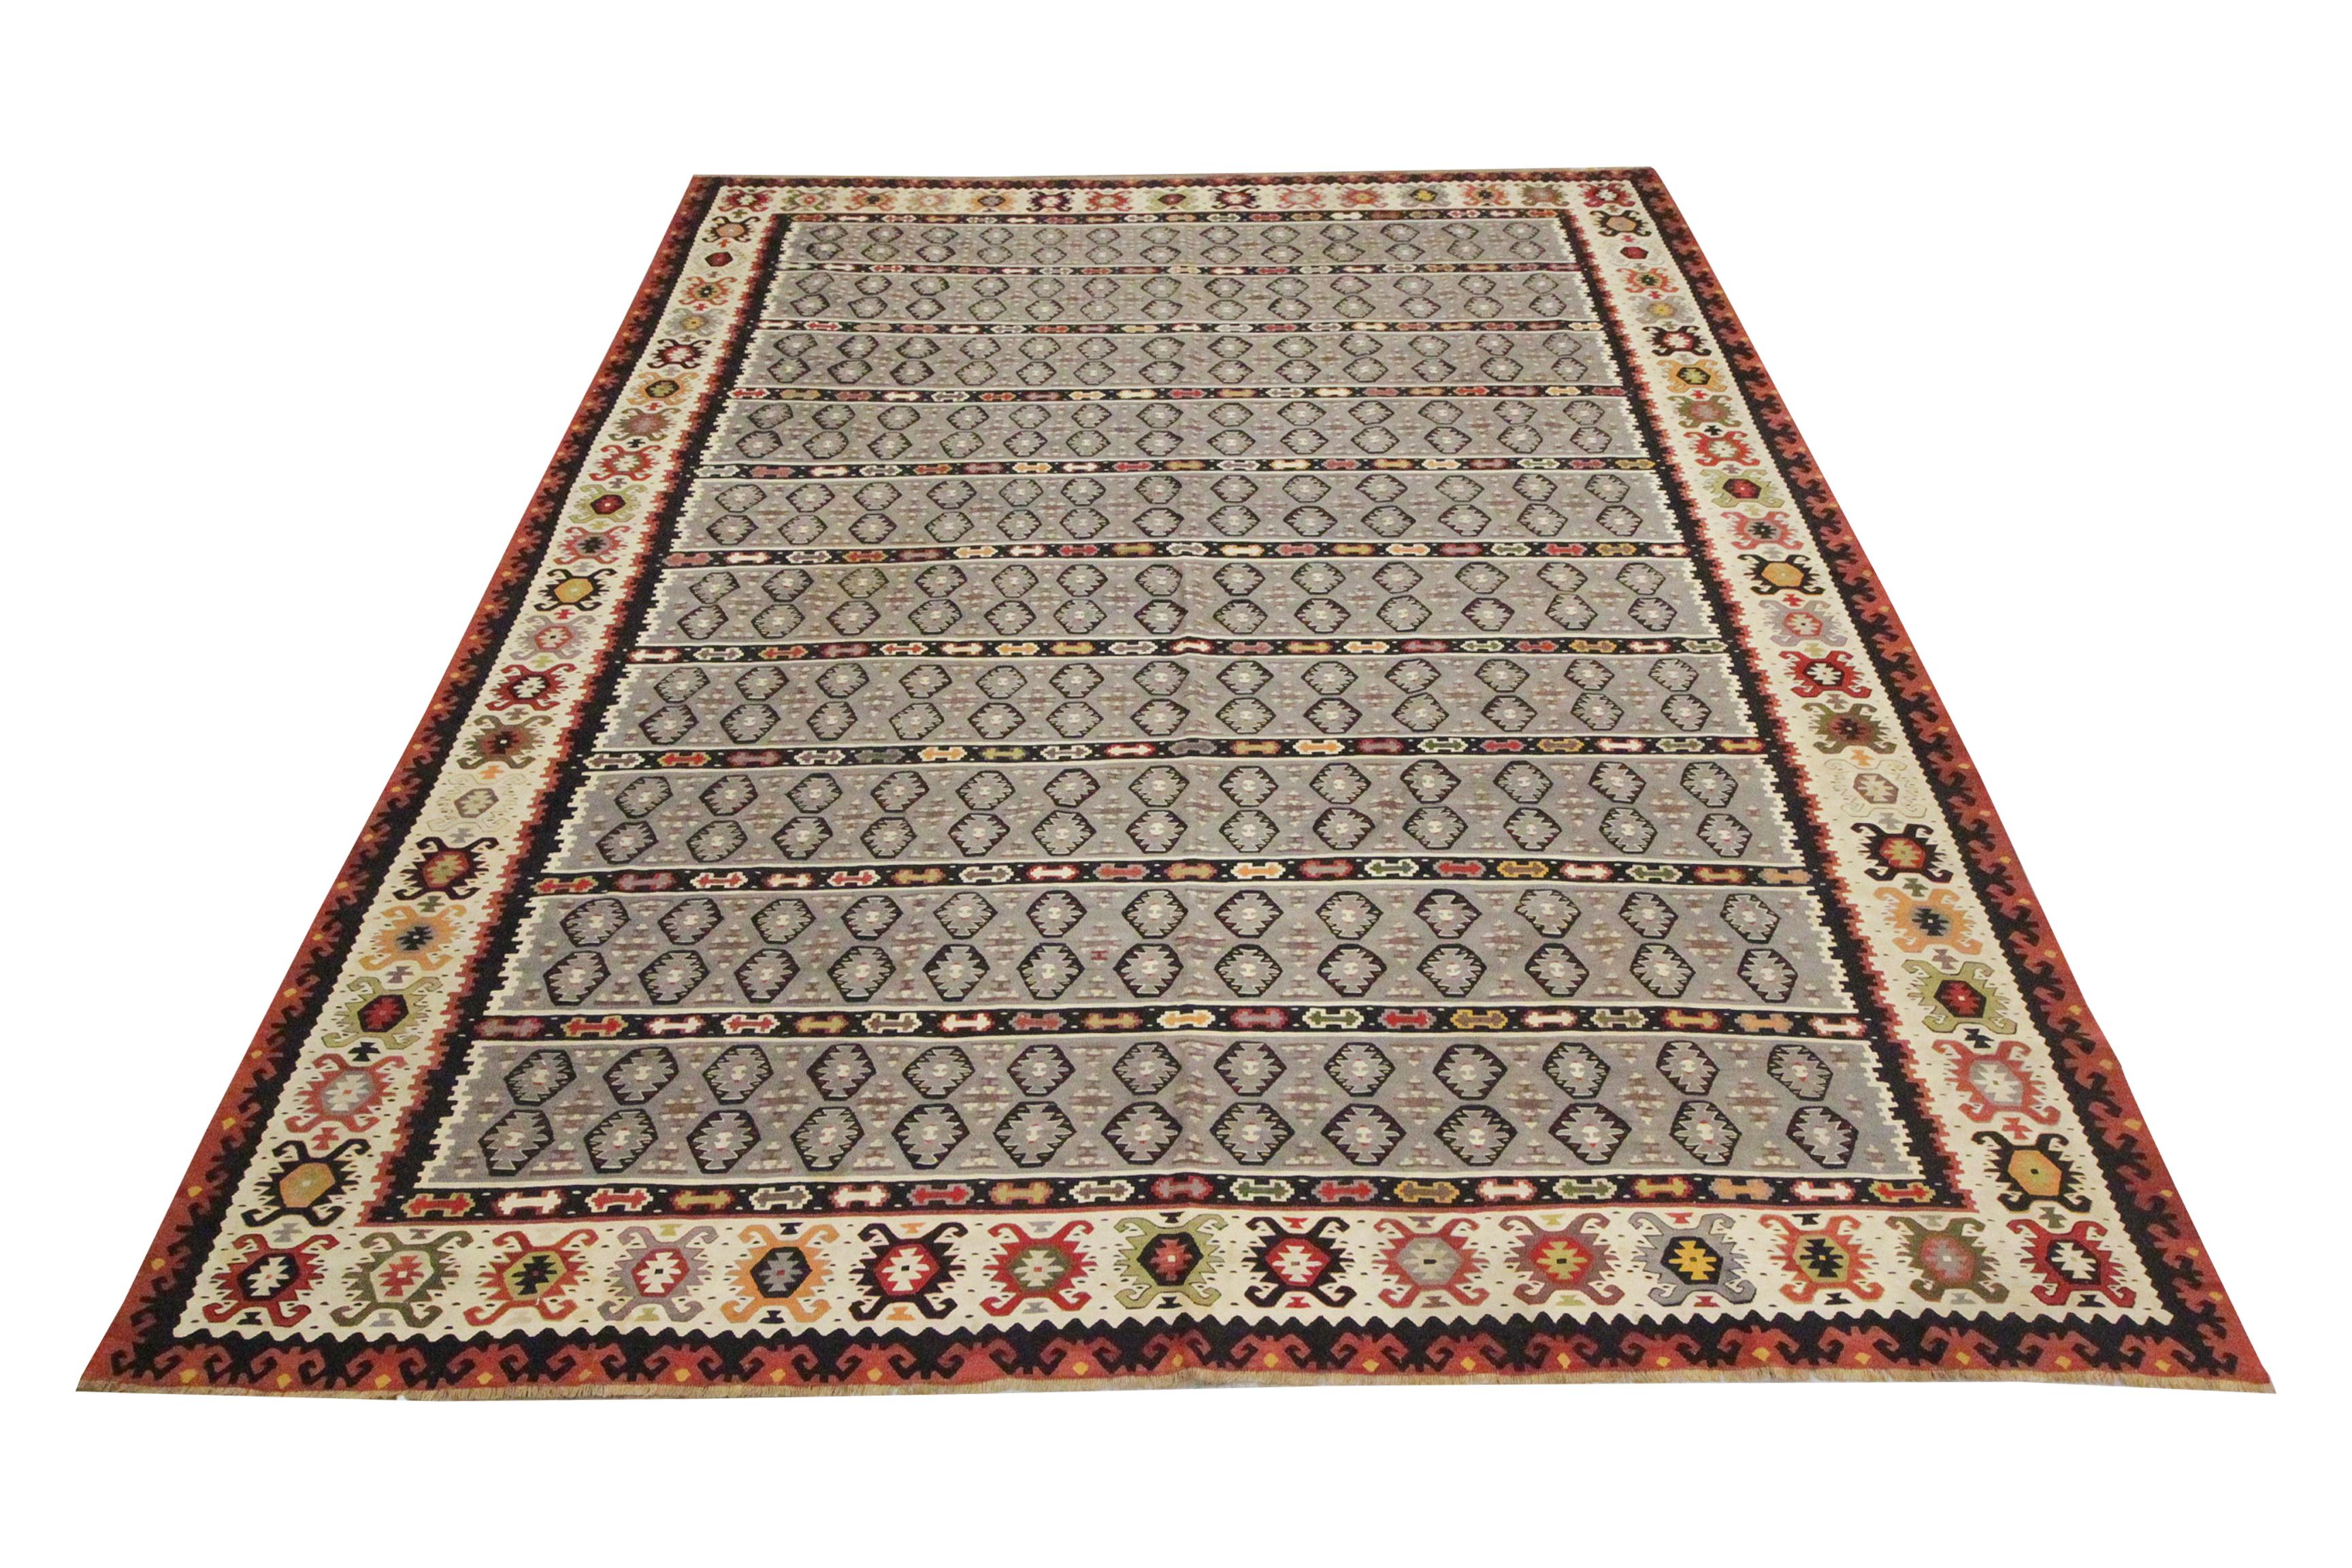 Sie suchen einen neuen Teppich, um Ihren Raum zu verschönern? Dieser kühne antike serbische Teppich wird genau das tun. Graue, cremefarbene und rostfarbene Akzente bilden die Hauptfarben dieses eleganten blauen Wollteppichs. Der gestreifte Teppich